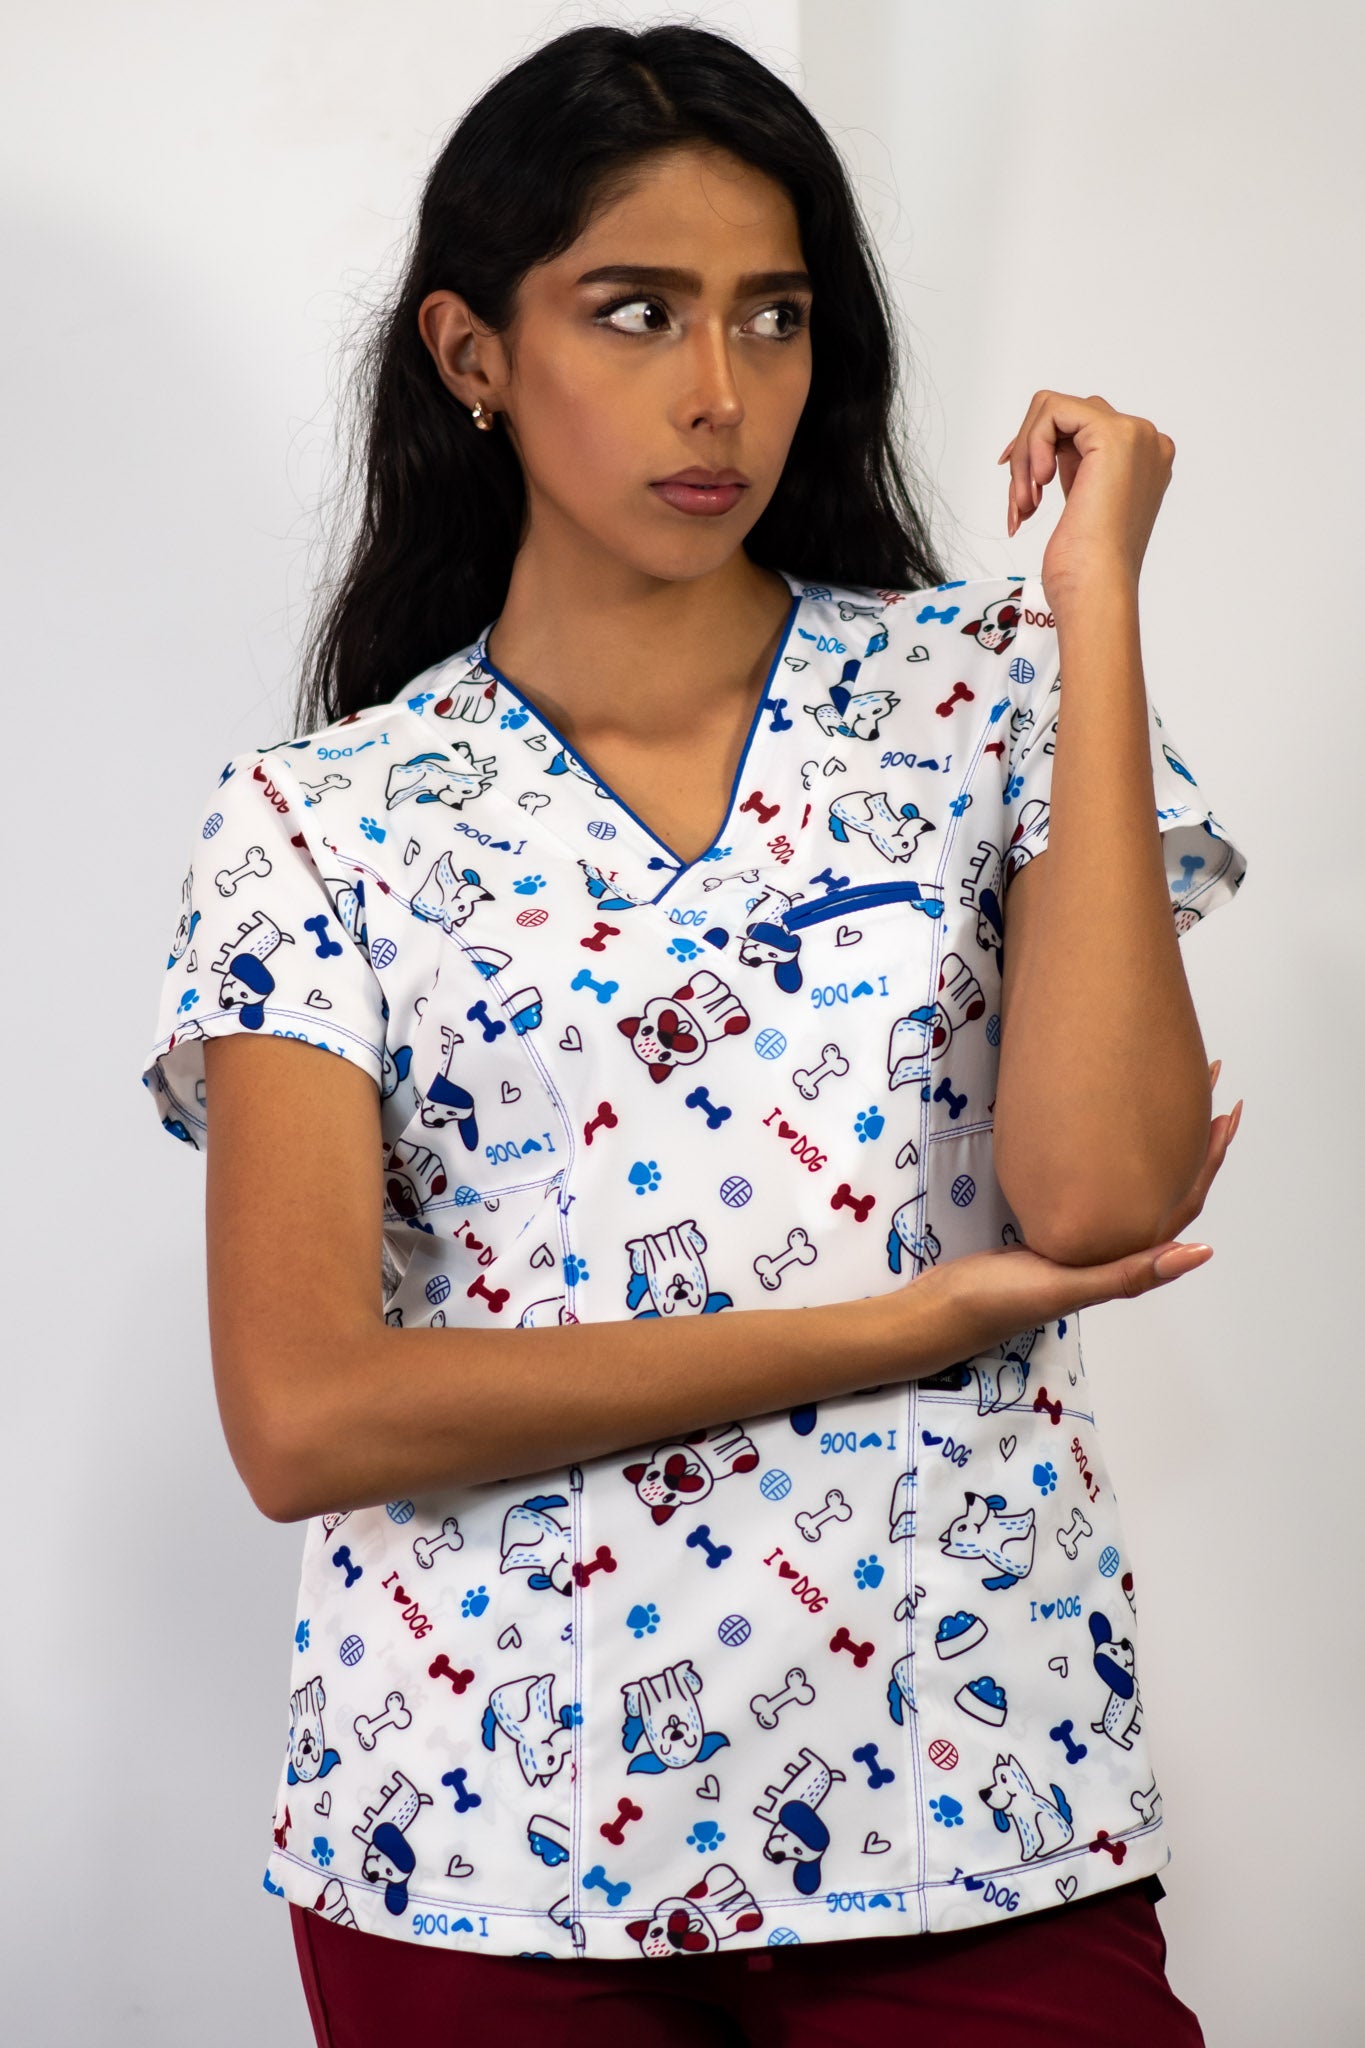 enfermeras uniformes